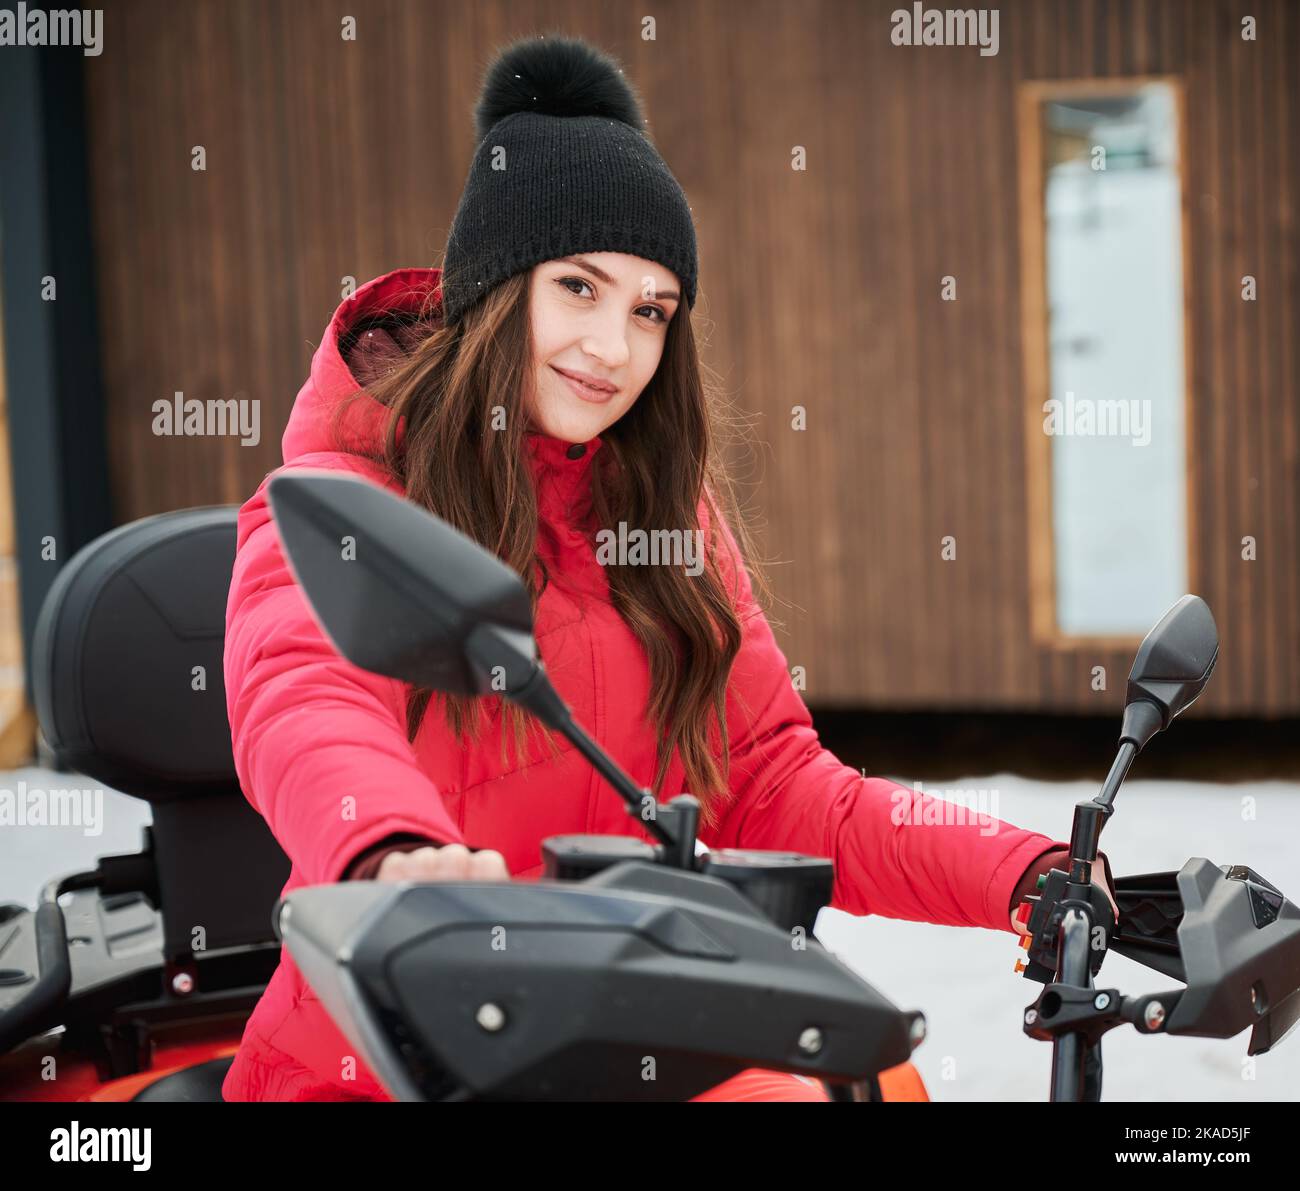 Porträt einer schönen Frau, die auf Geländewagen-Geländewagen-ATV mit Holzhaus im Hintergrund posiert. Konzept der aktiven Freizeit und Winteraktivitäten. Stockfoto